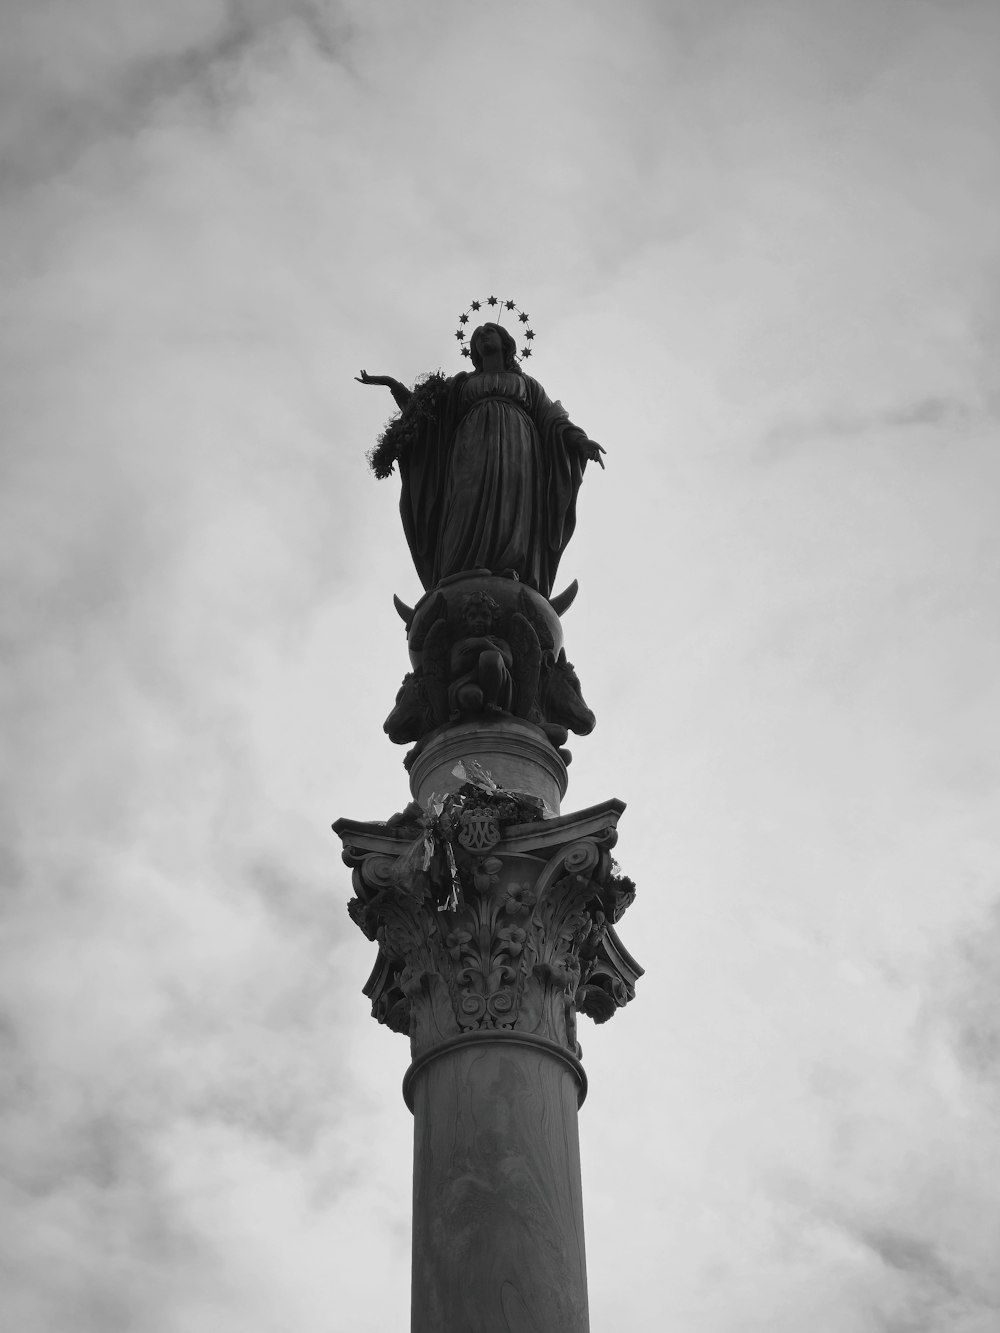 기둥 위에 있는 조각상의 흑백 사진